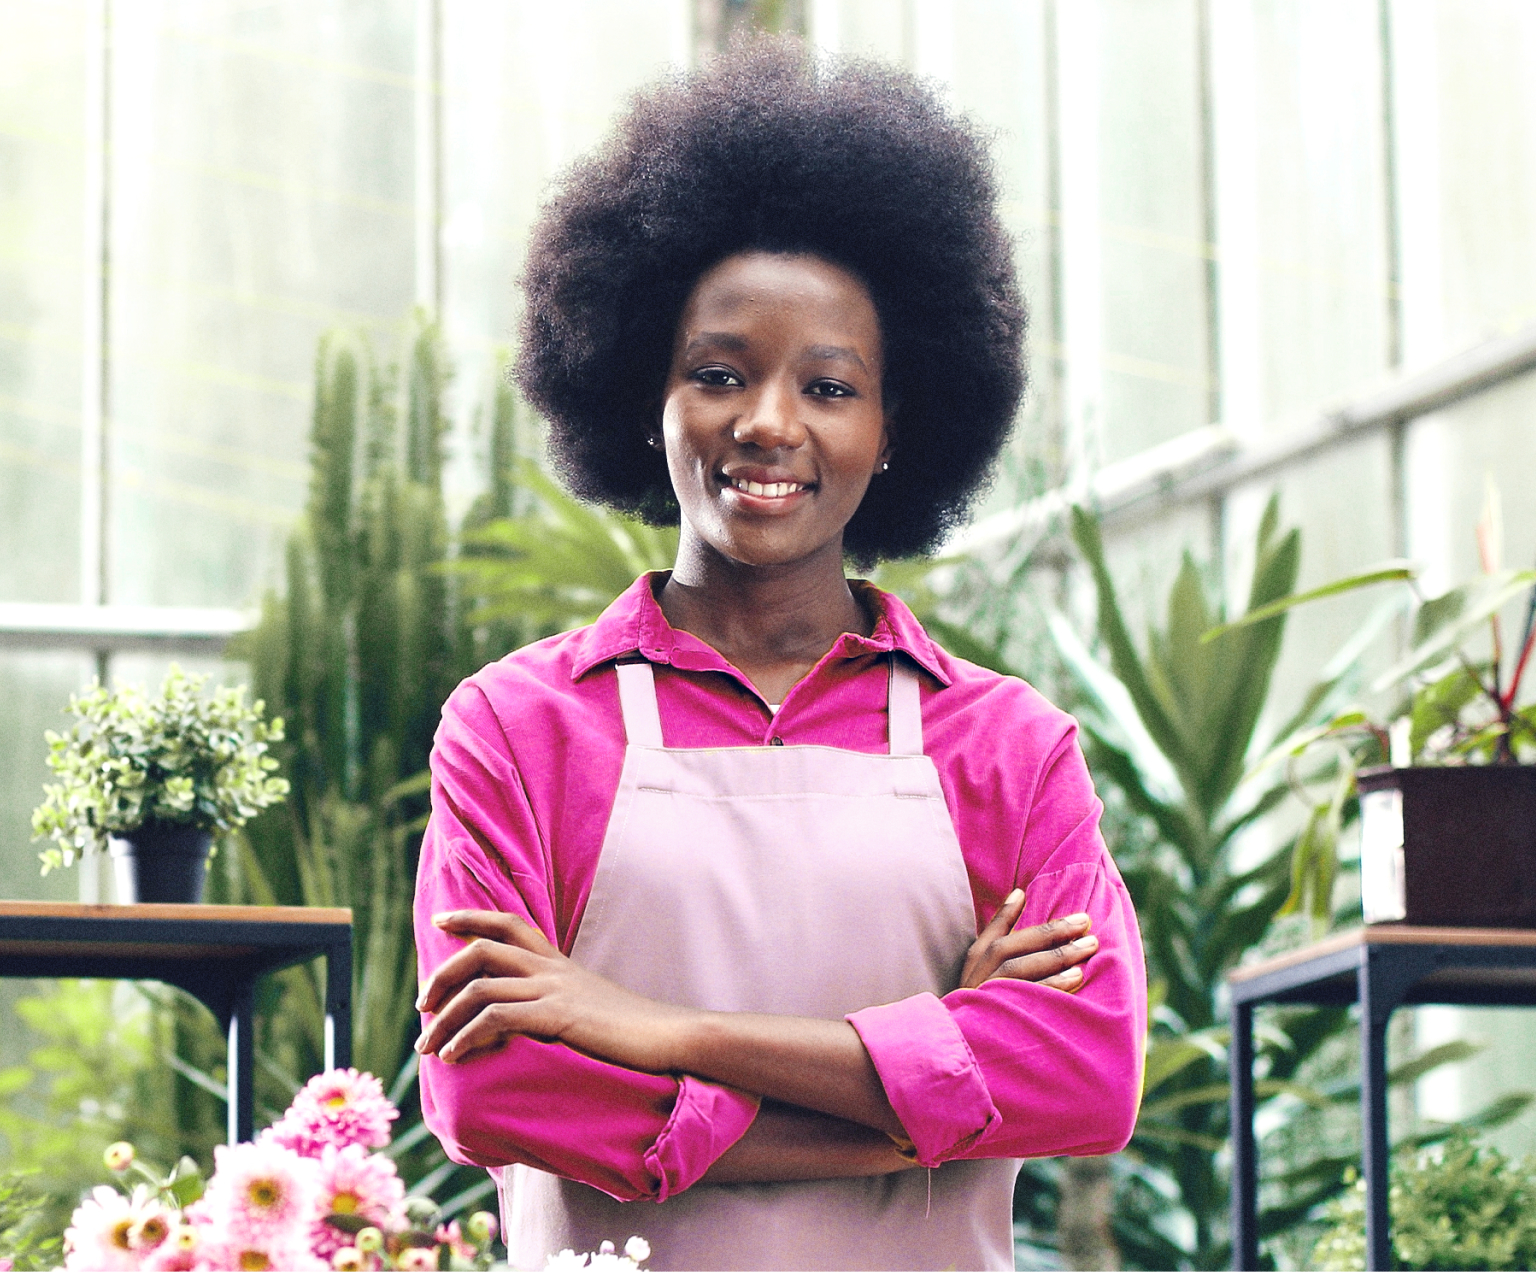 Imagem de uma mulher preta, empresária e empoderada em sua floricultura. Ela está com braços cruzados, sorridente e passando muita confiança e tranquilidade.